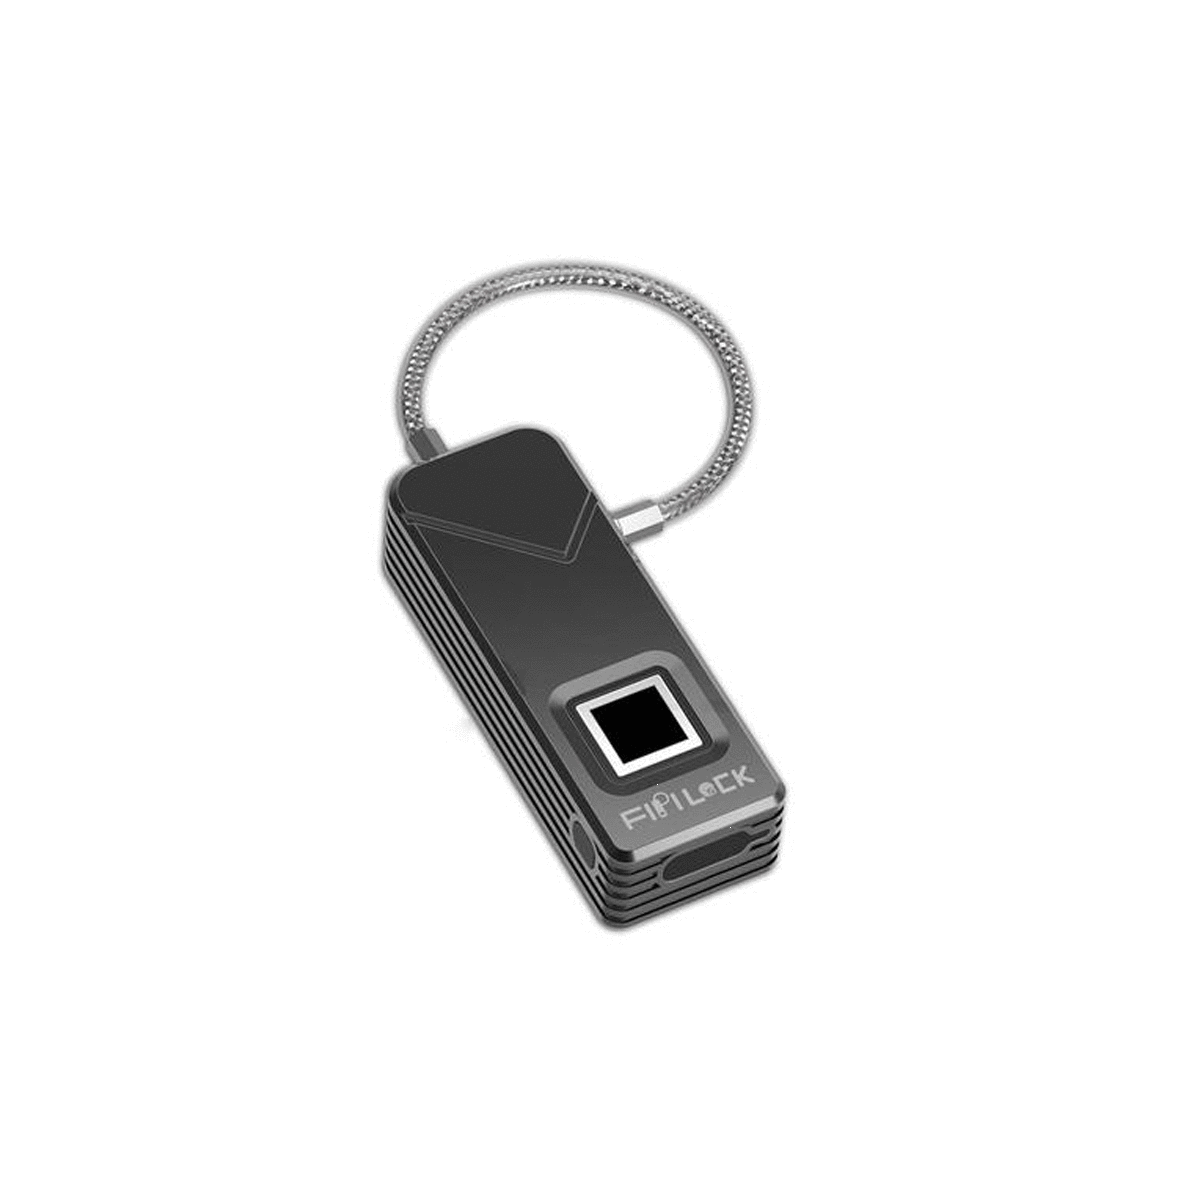 FipiLock Smart Fingerprint Padlock Biometric Lock Portable Outdoor Padlock - SquareDubai